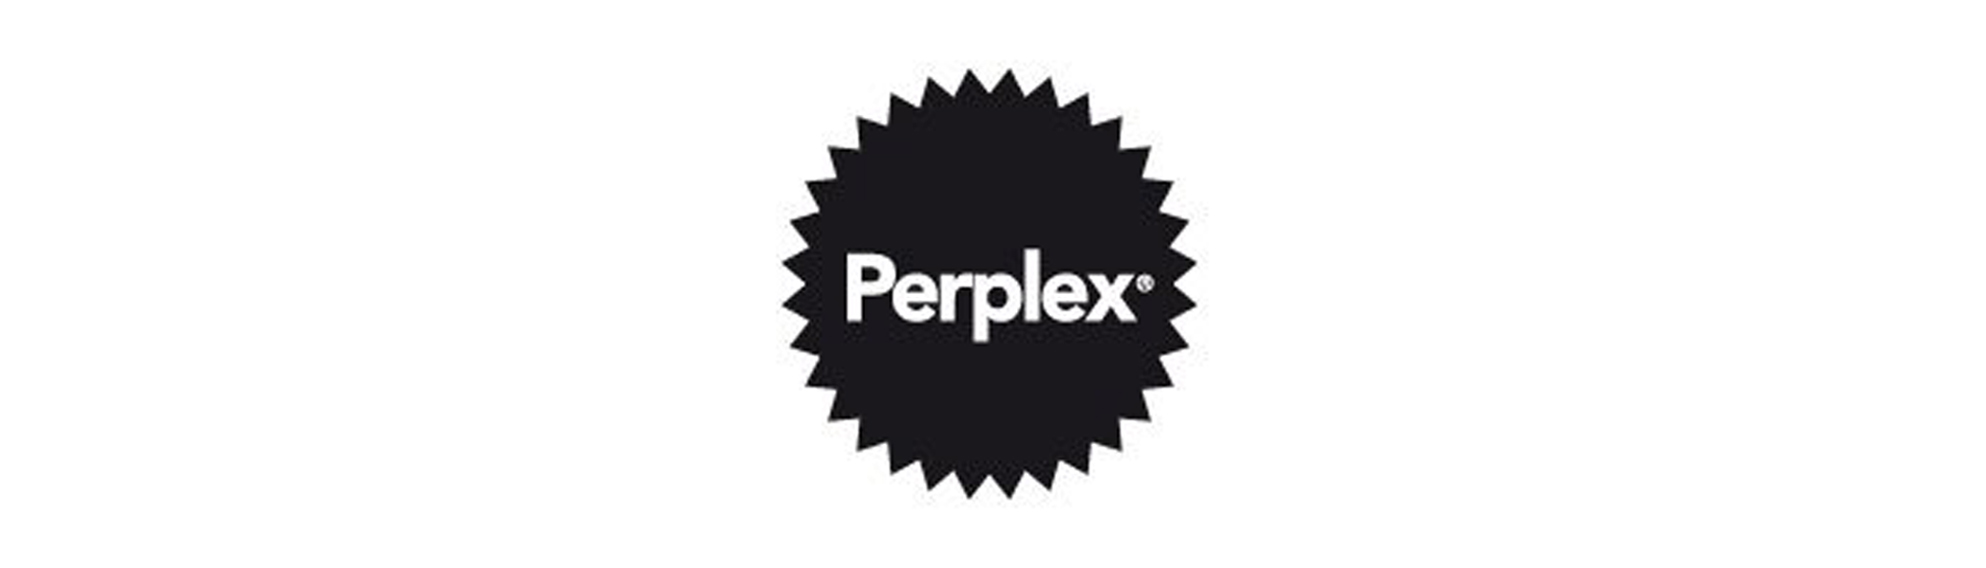 perplex-logo